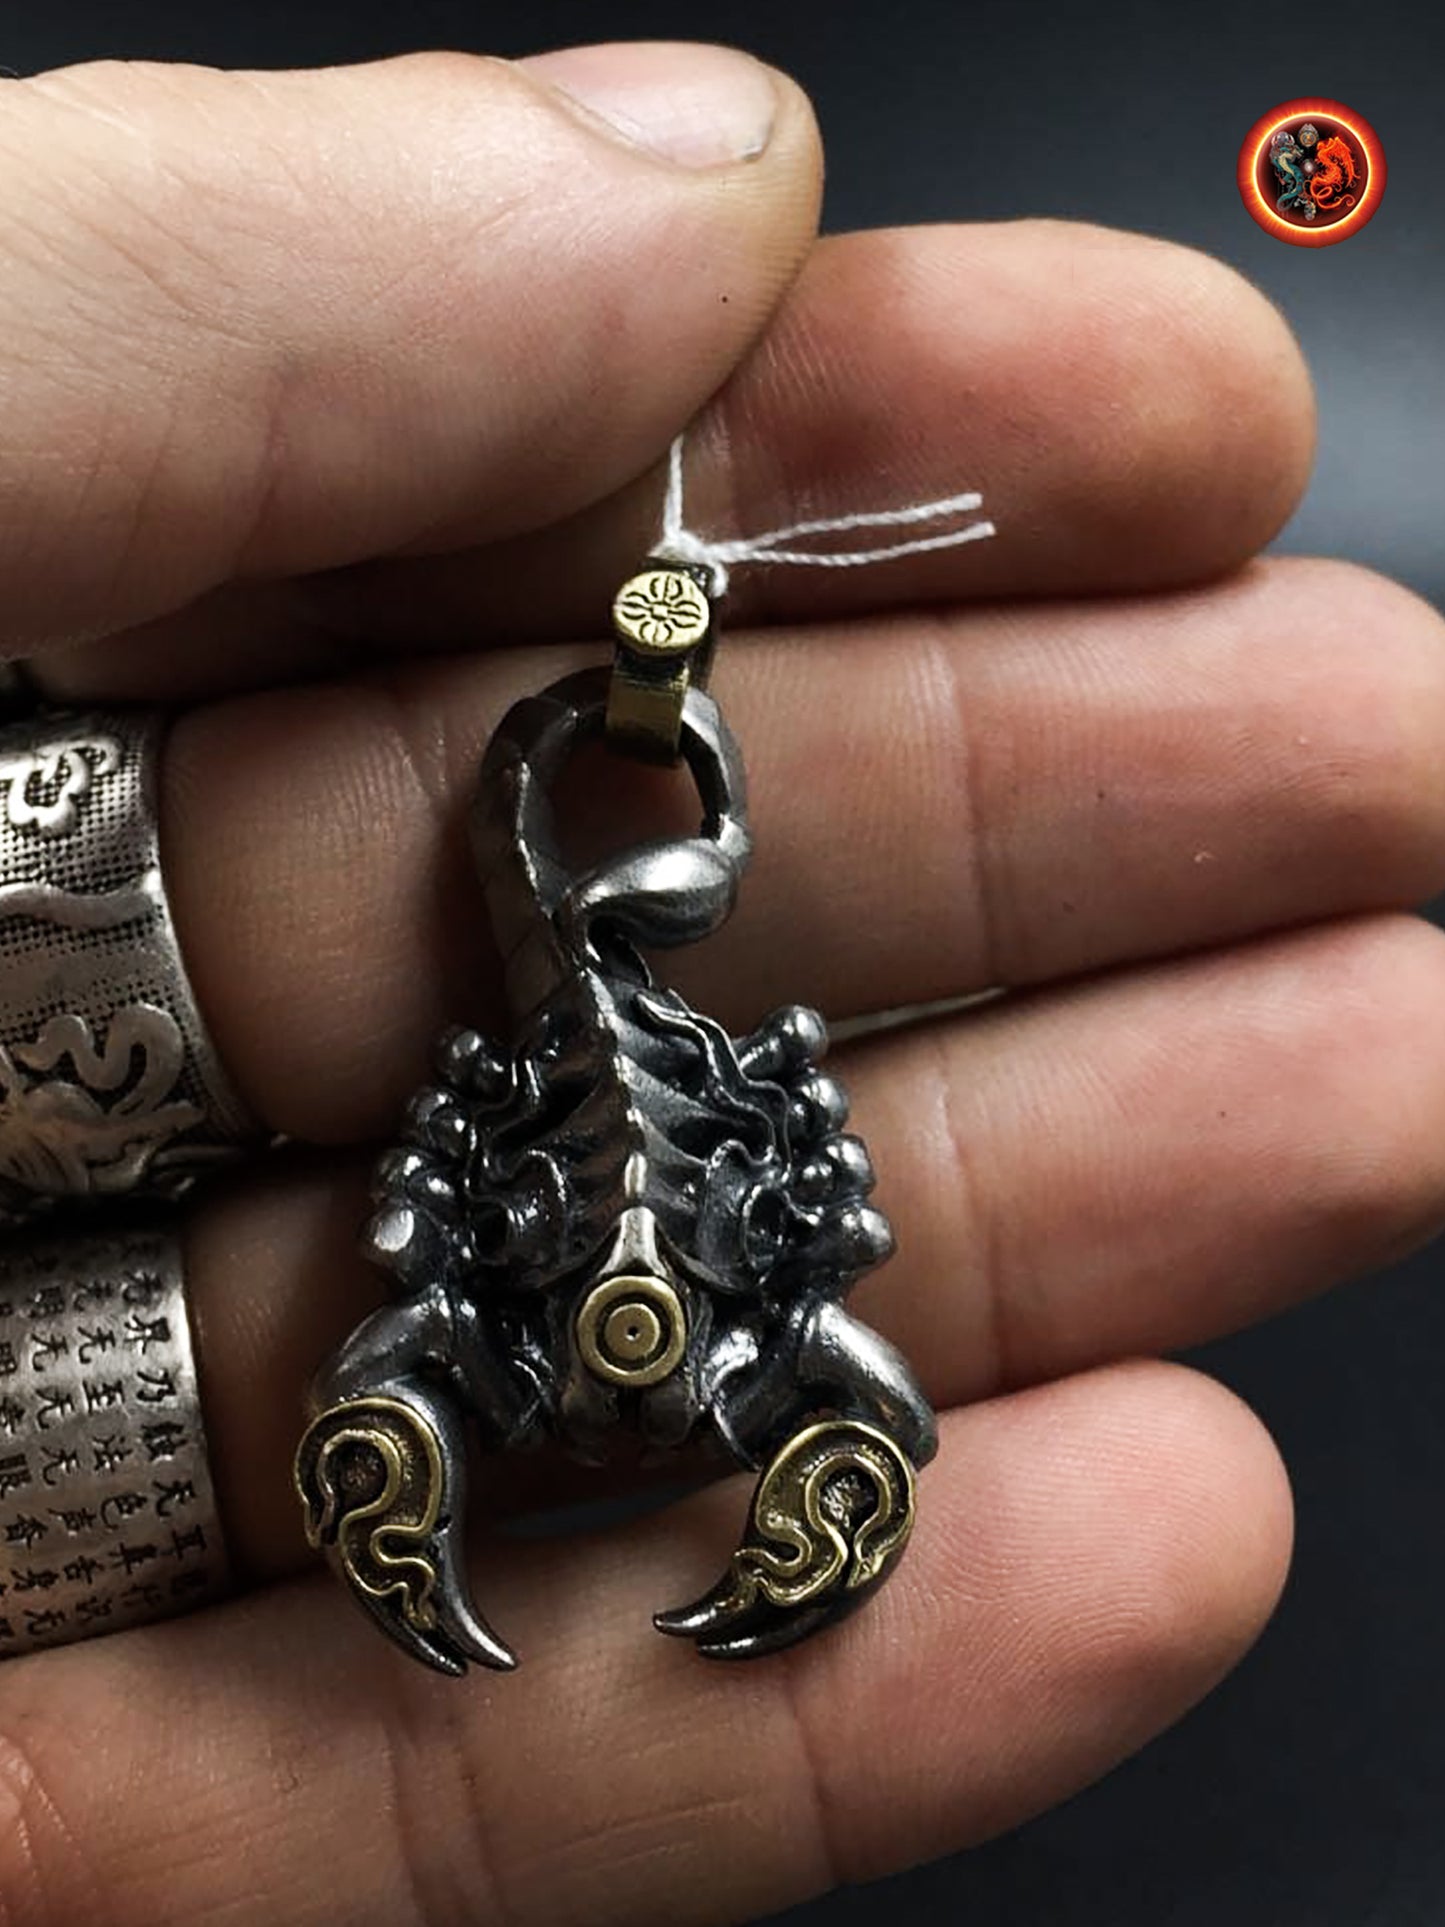 pendentif scorpion tibétain, amulette de protection bouddhiste de padmasambhava (Guru Rinpoché) argent 925 et cuivre, mantra sur le ventre - obsidian dragon